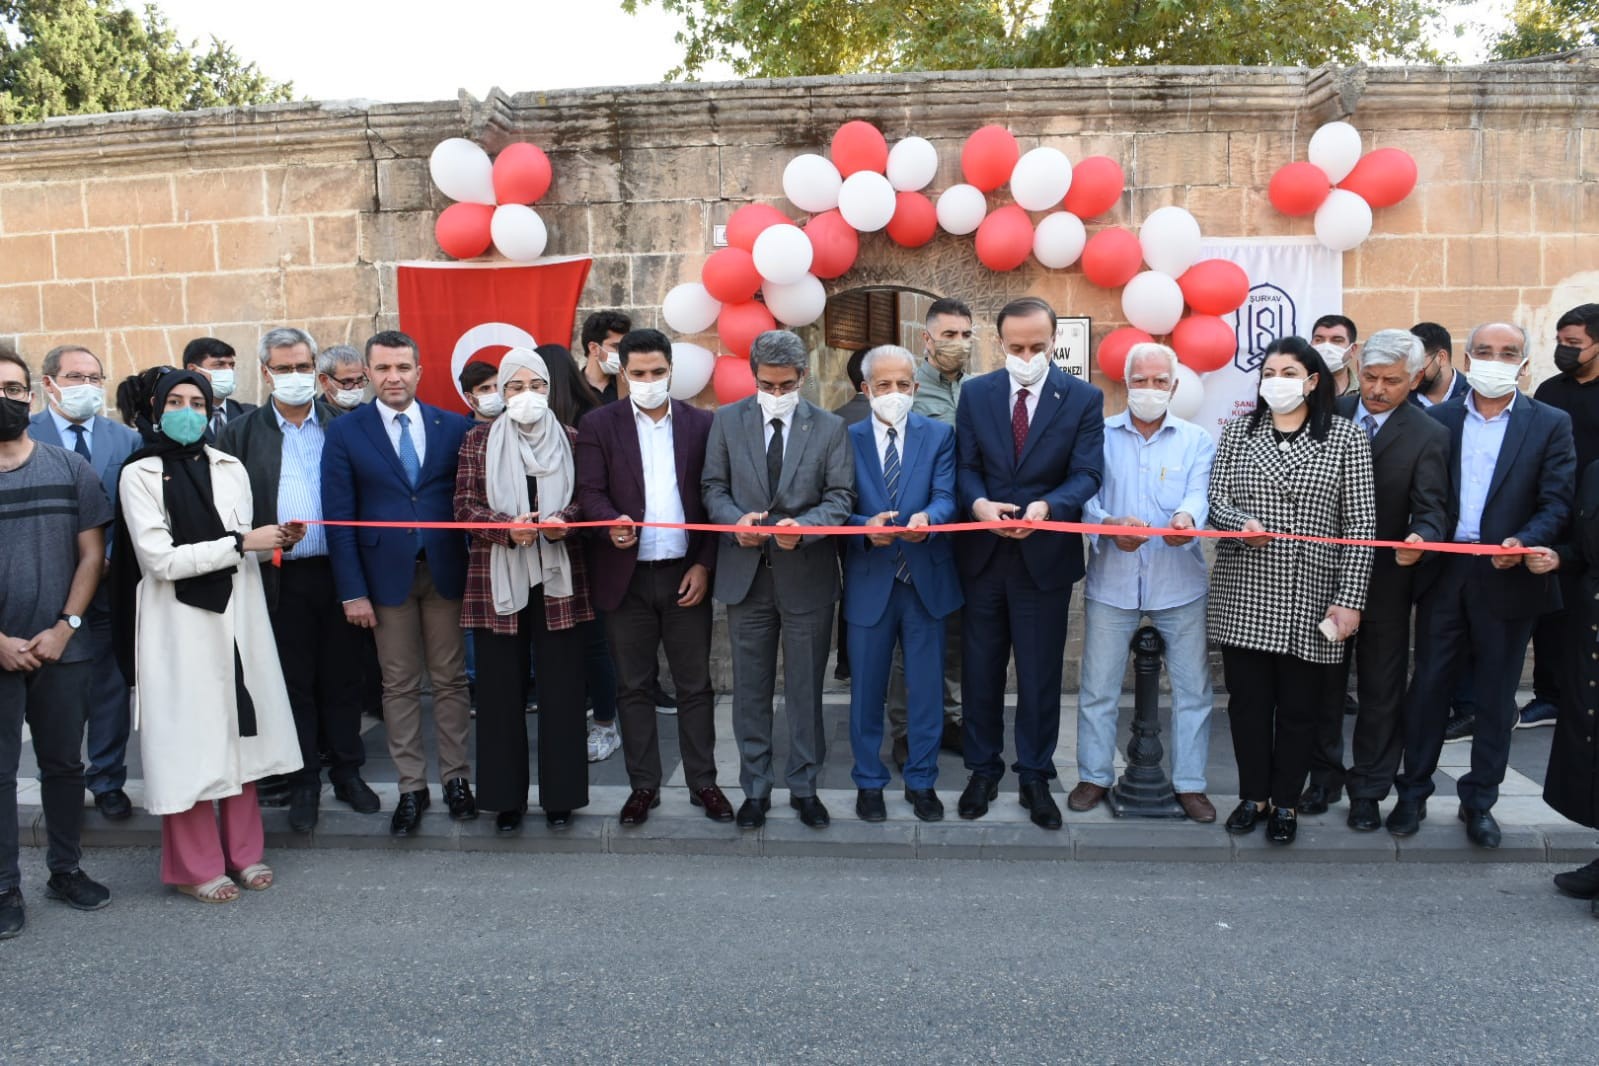 Şanlıurfa’da ŞURKAV Gençlik Merkezi açıldı #sanliurfa